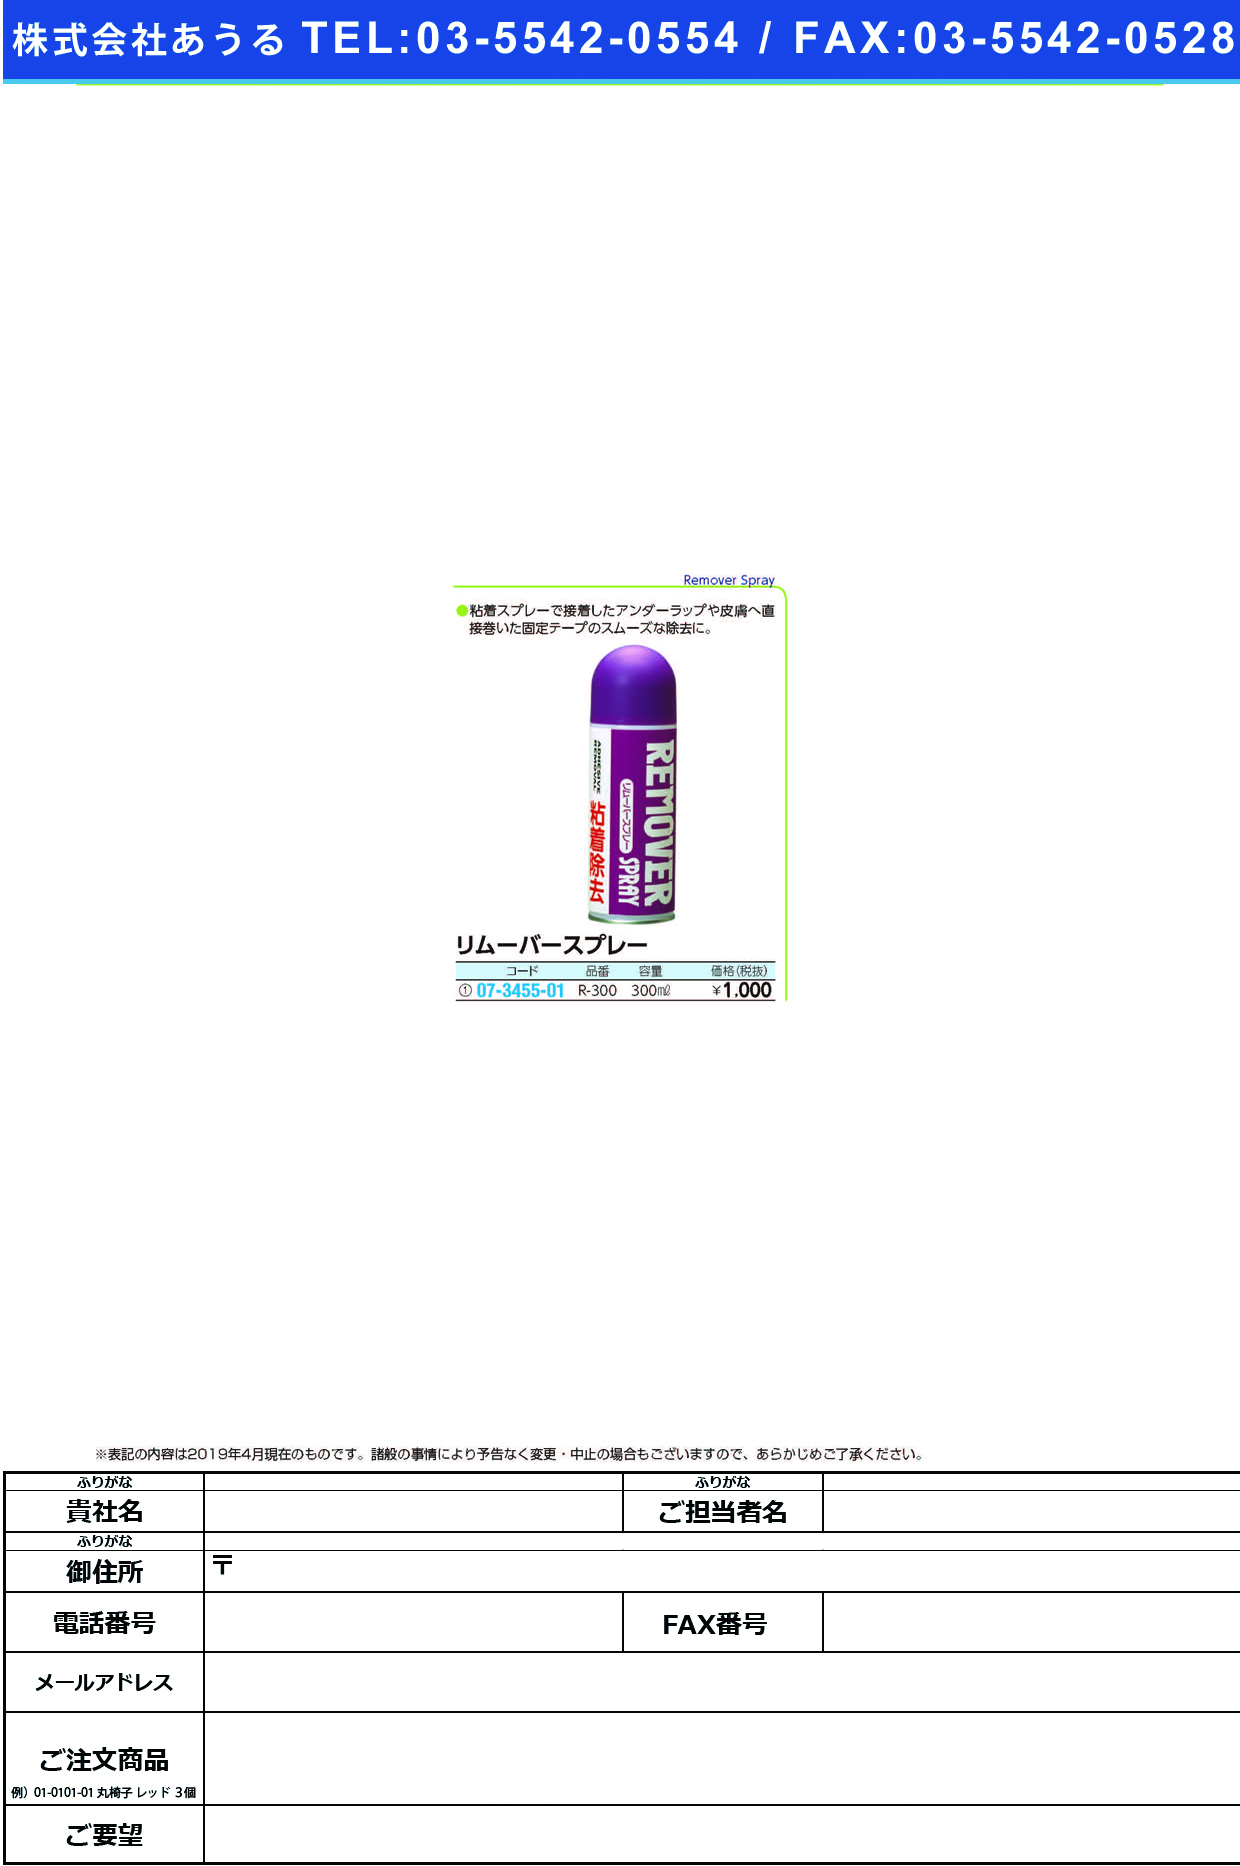 (07-3455-01)ＢＷリムーバースプレー R-300(300ML) BWﾘﾑｰﾊﾞｰｽﾌﾟﾚｰ(ニチバン)【1本単位】【2019年カタログ商品】